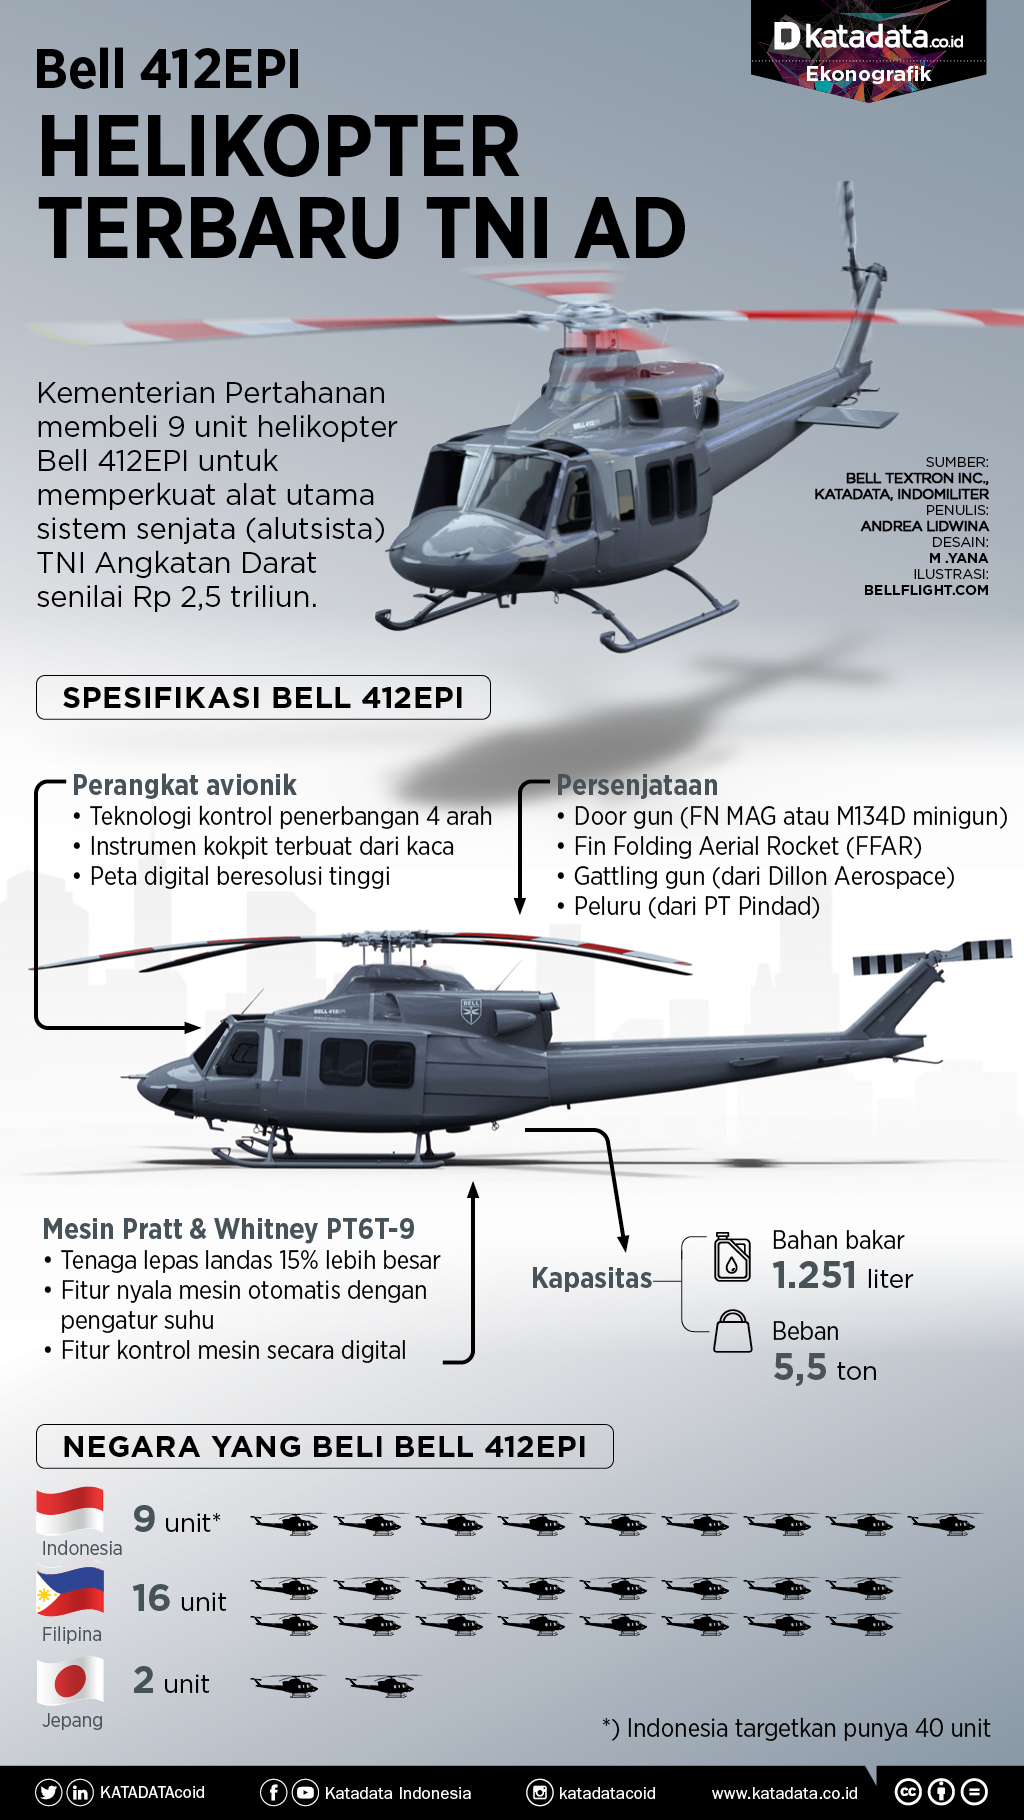 Helikopter TNI AD